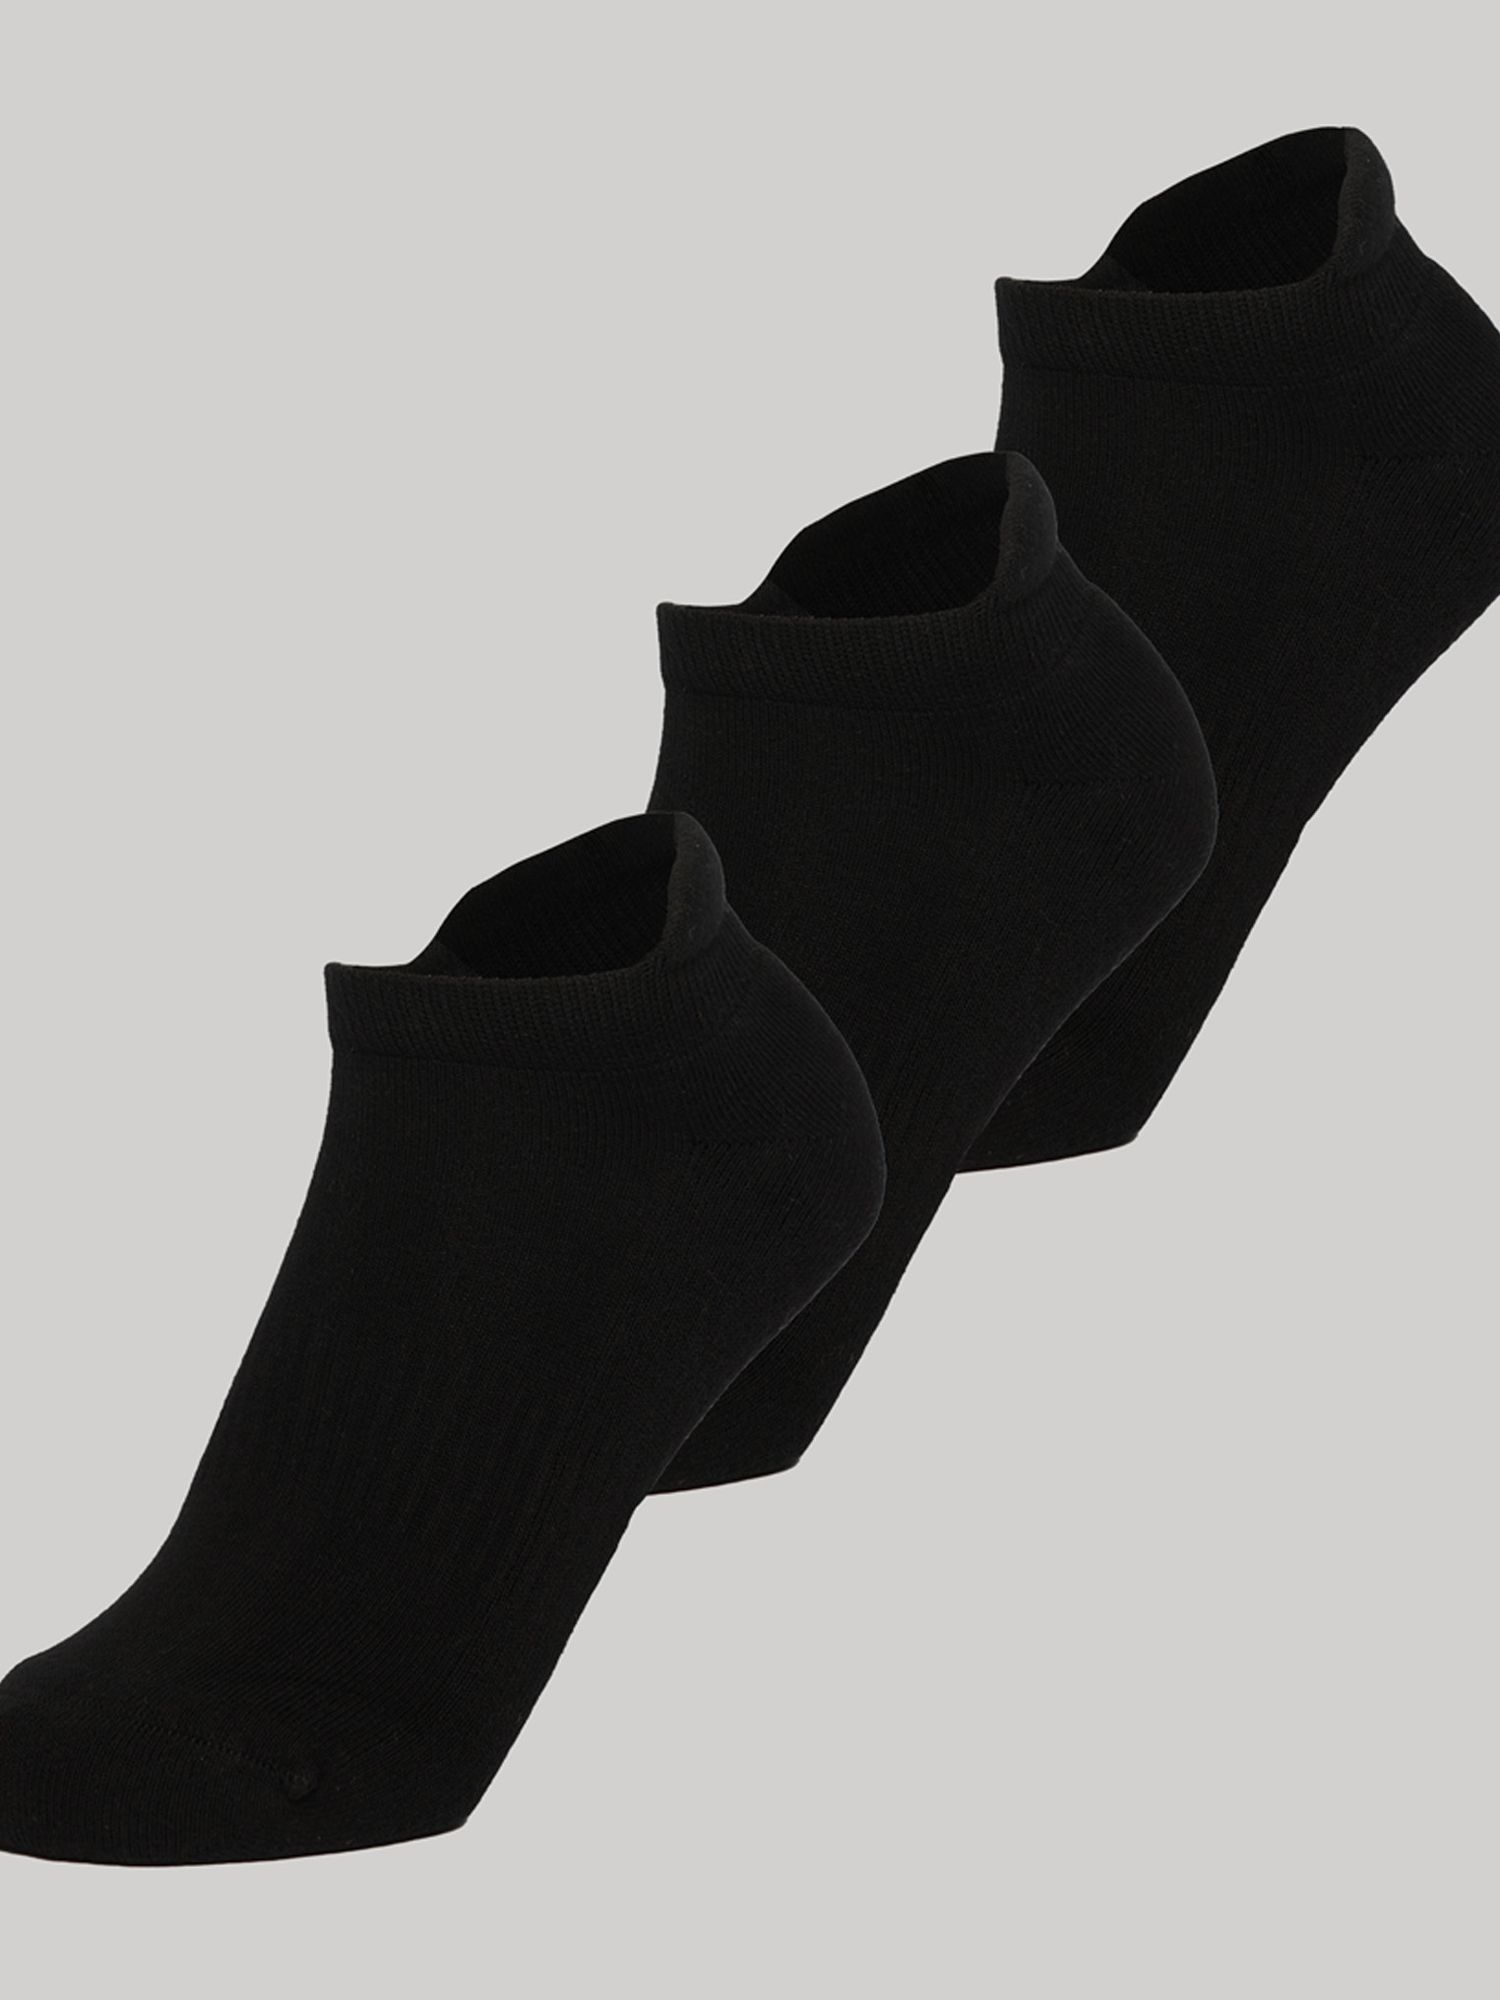 Buy Superdry Trainer Socks, Pack of 3, Black Online at johnlewis.com